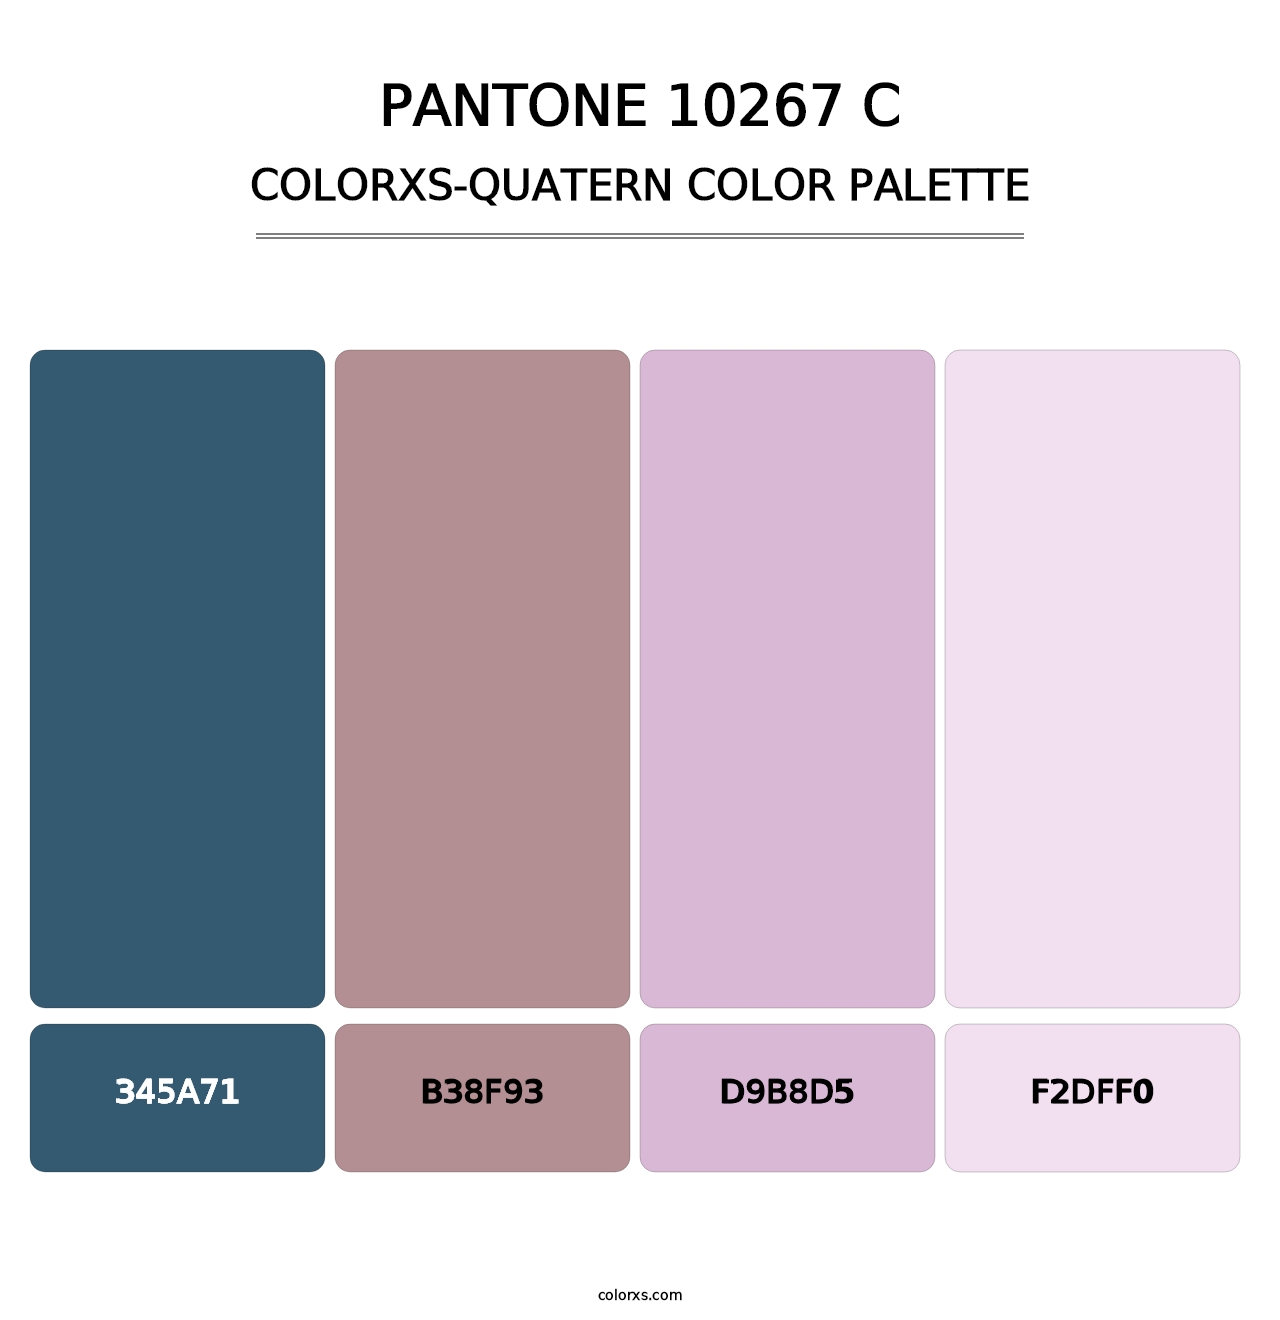 PANTONE 10267 C - Colorxs Quatern Palette